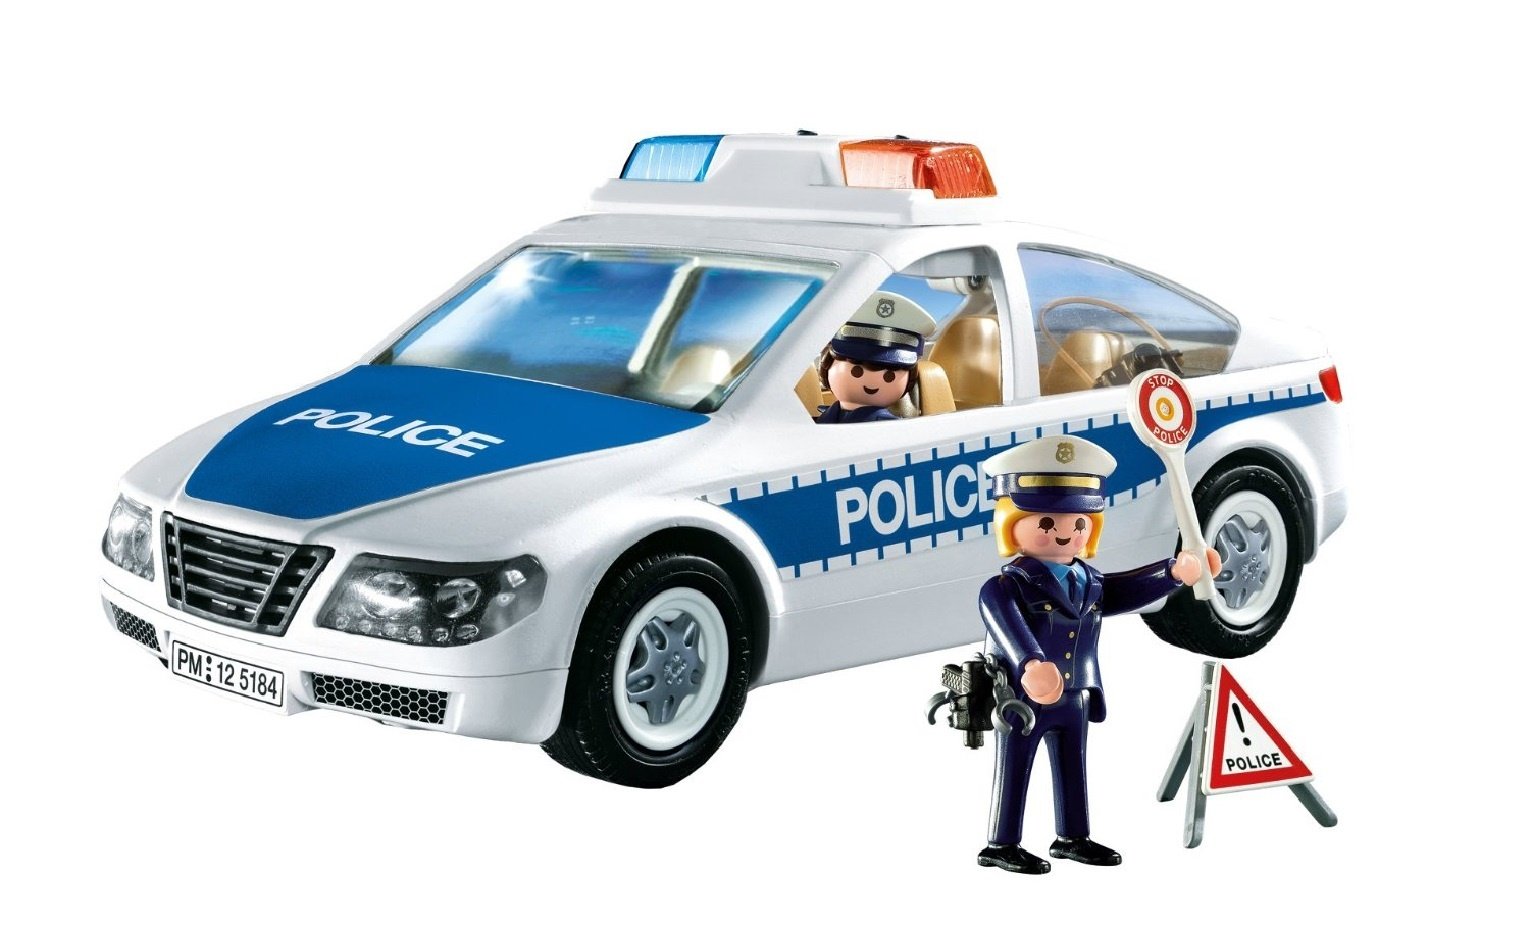 Про полицейскую машину для мальчиков. Playmobil полиция 6920. Плеймобил полиция 5184. Плеймобиль полиция полиц маш. Playmobil Police 5184.